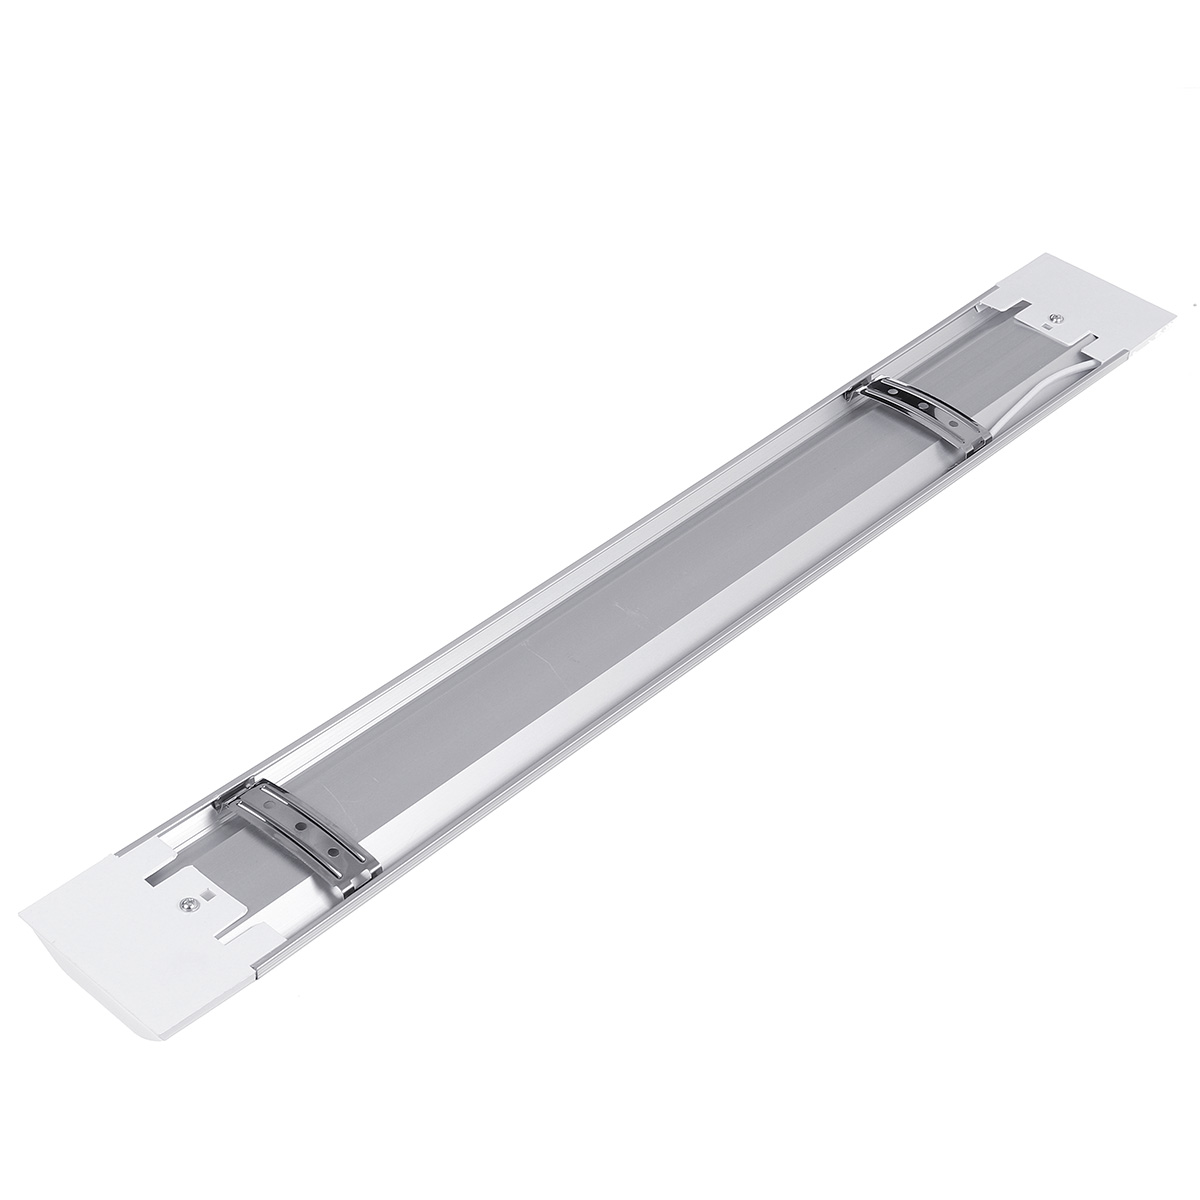 6Pcs-2FT-LED-Batten-Tube-Light-For-Garage-Workshop-Ceiling-Panel-Wall-Lamp-1730495-9